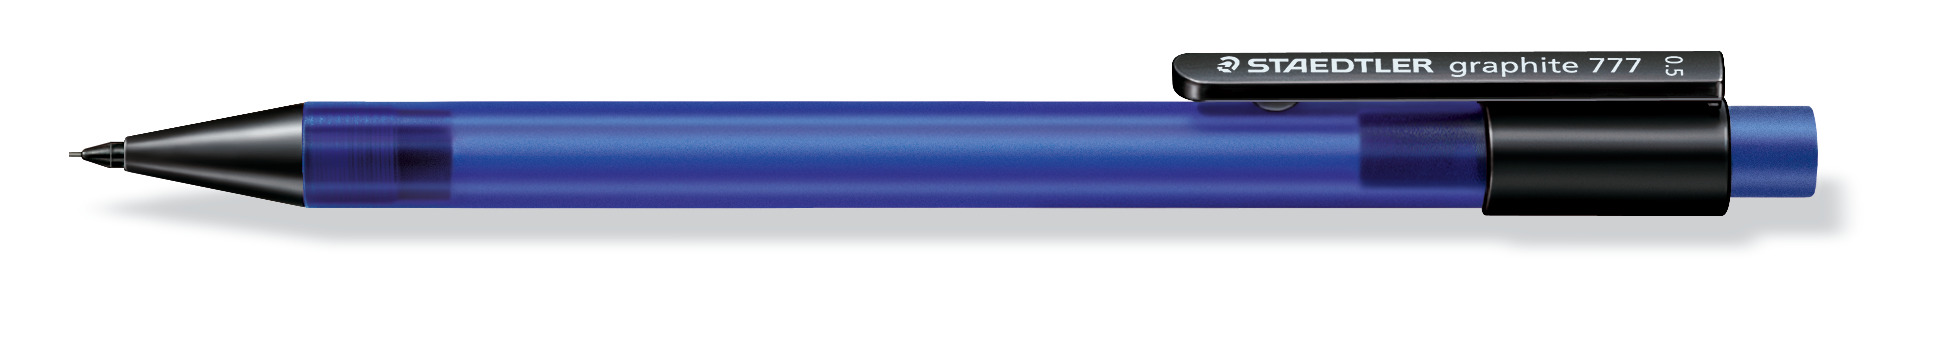 Vulpotlood Graphite 777 0,3mm blauw